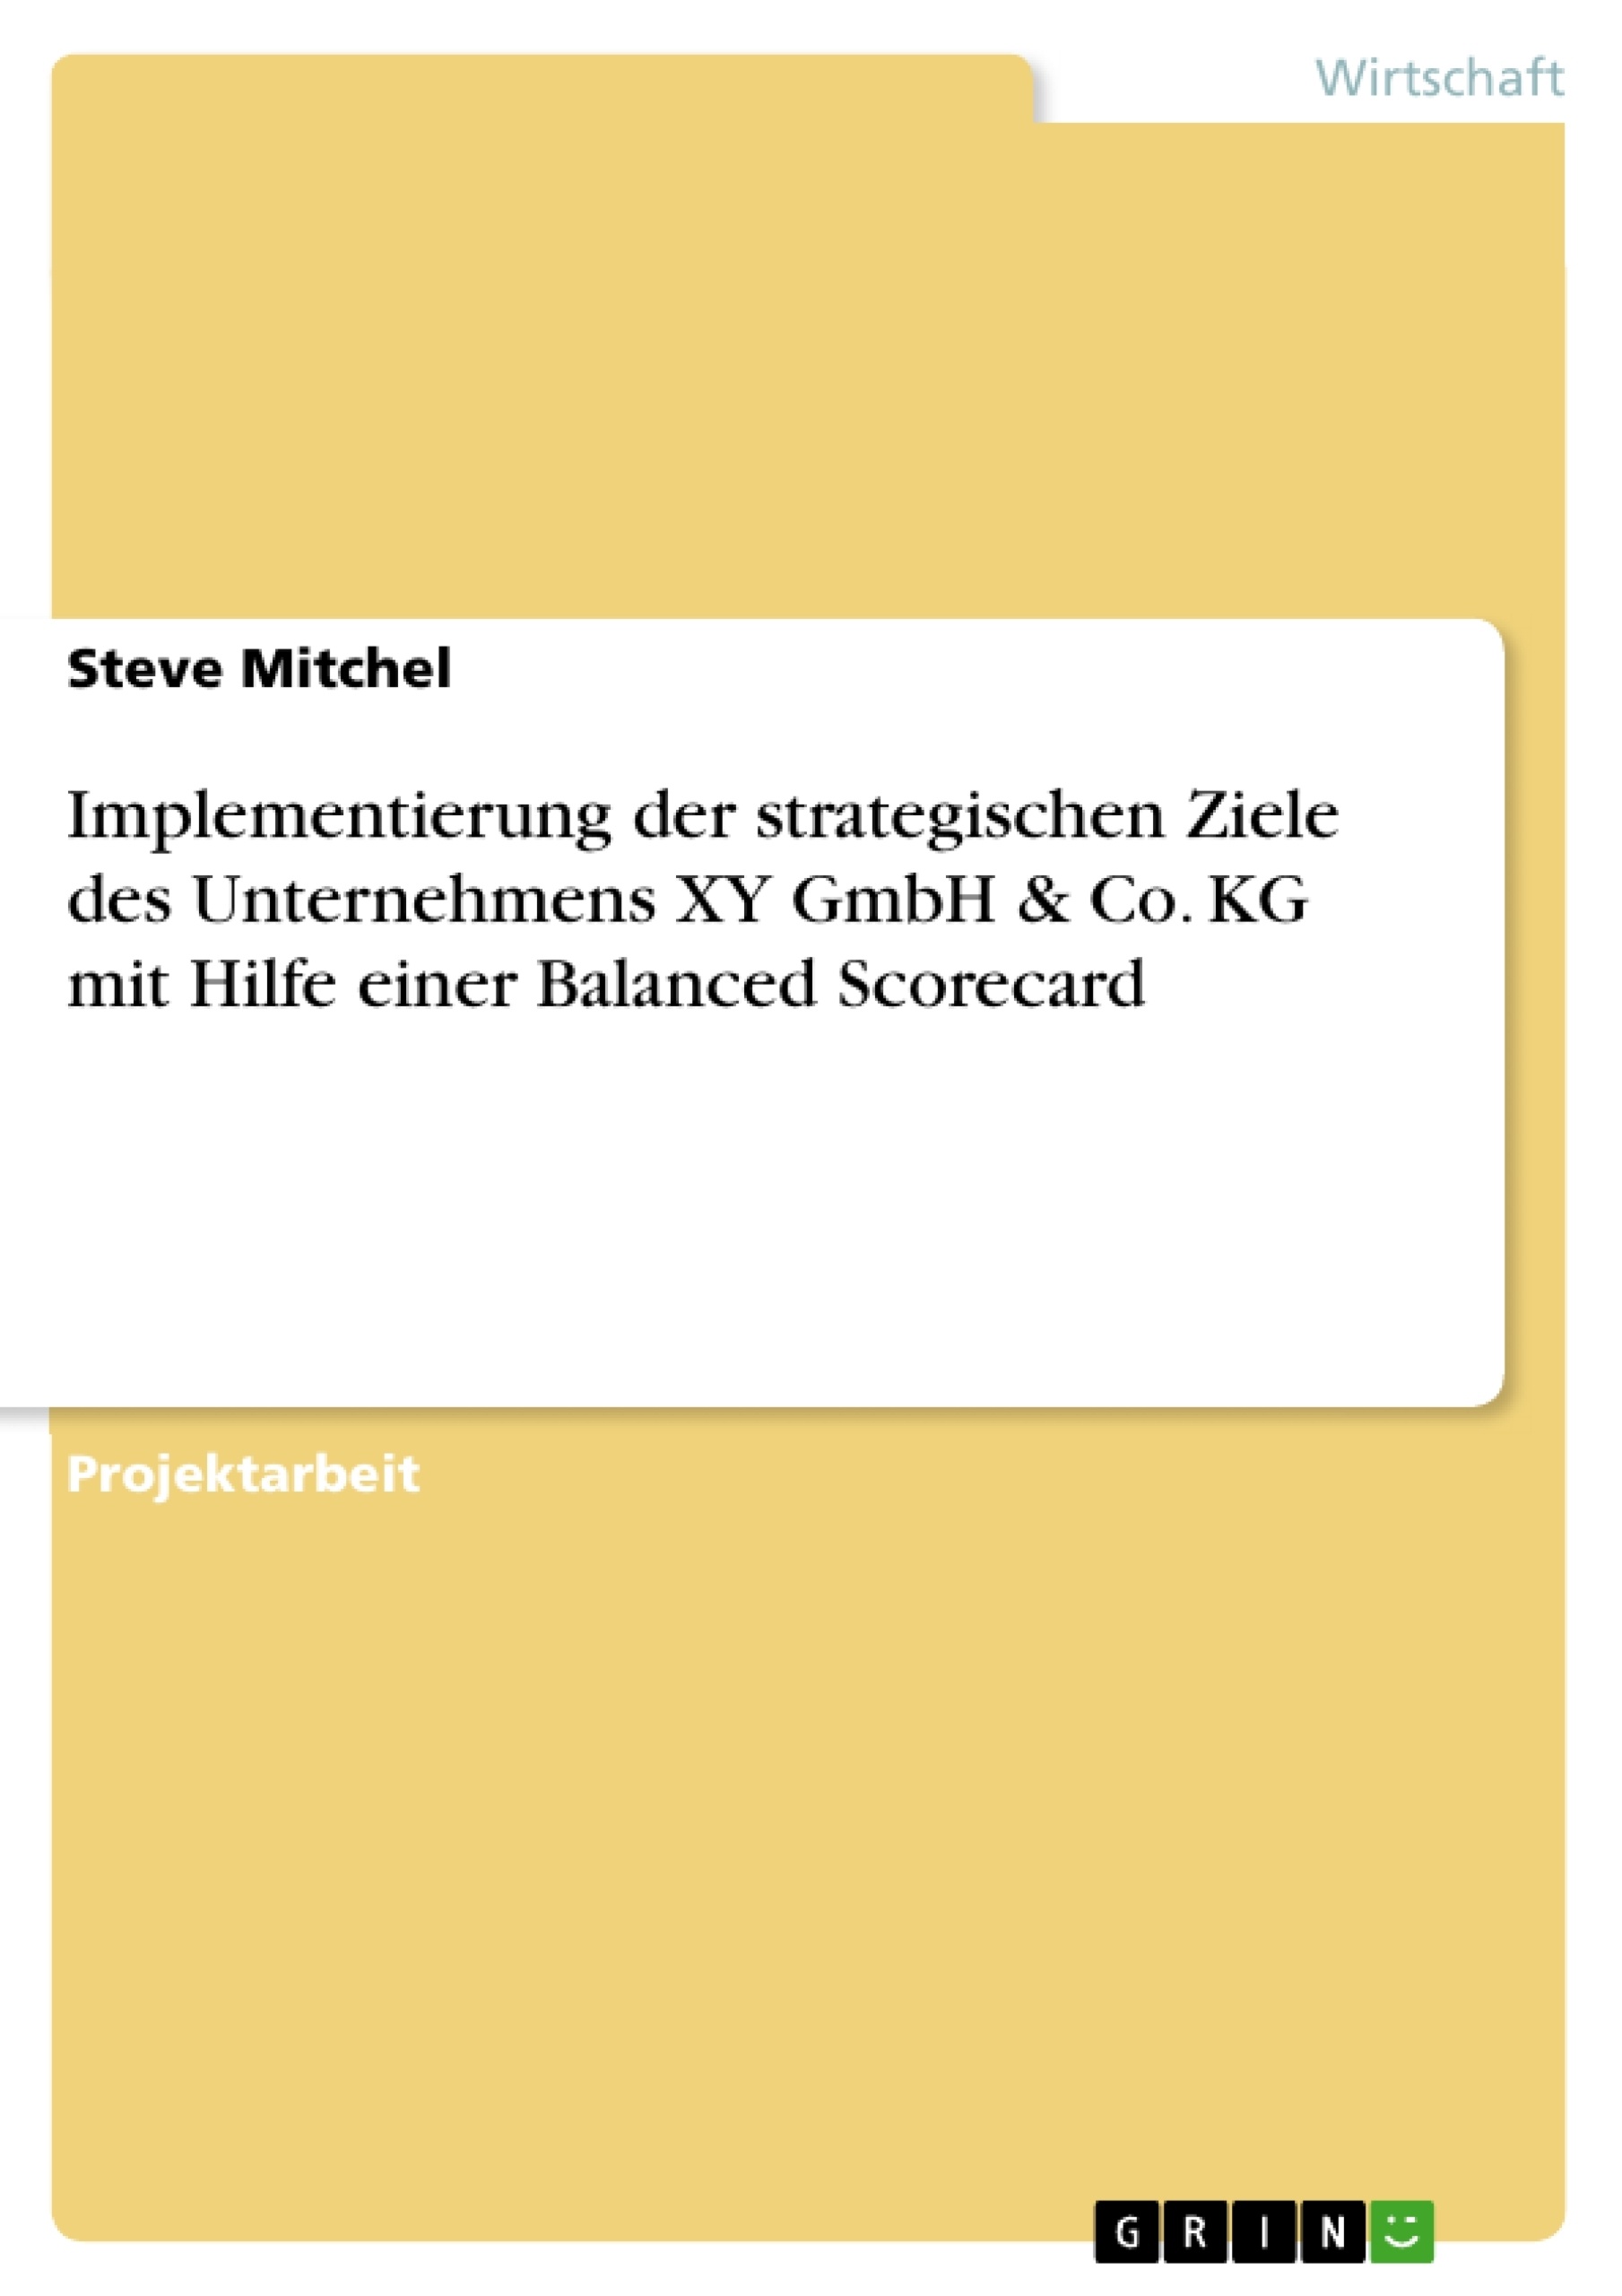 Title: Implementierung der strategischen Ziele des Unternehmens XY GmbH & Co. KG mit Hilfe einer Balanced Scorecard